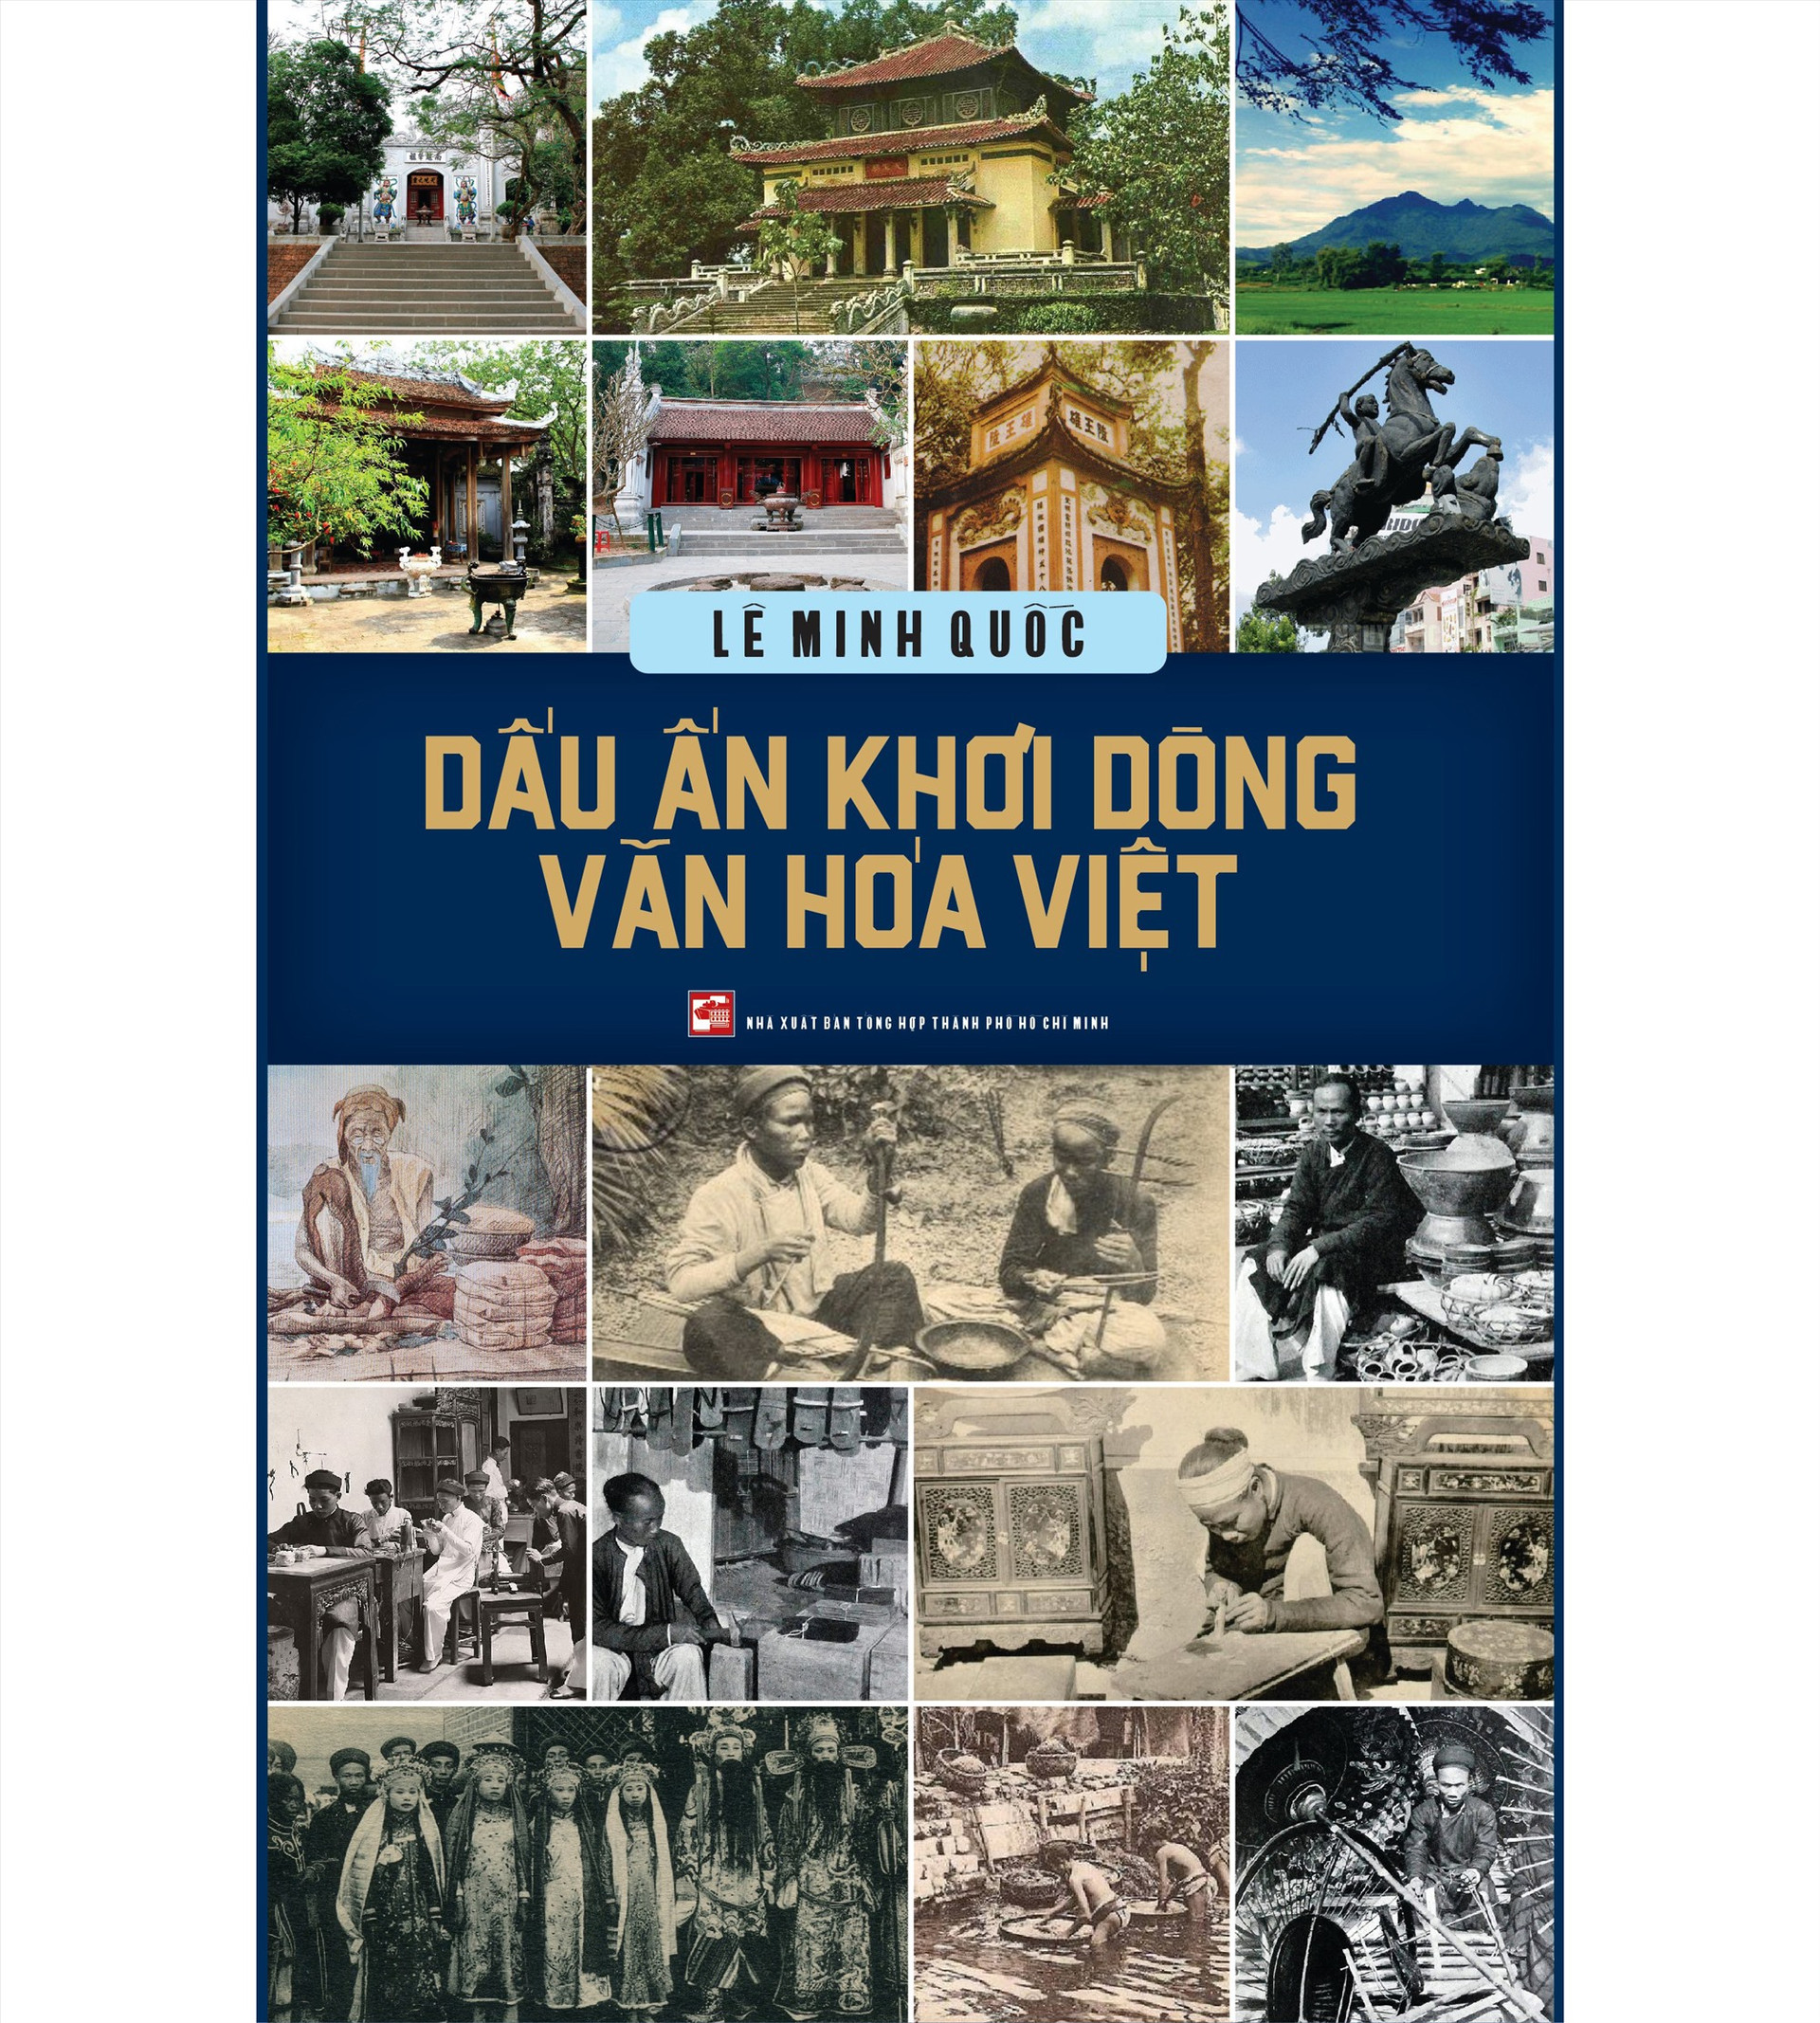 Cuốn sách “Dấu ấn khơi dòng văn hóa Việt”.